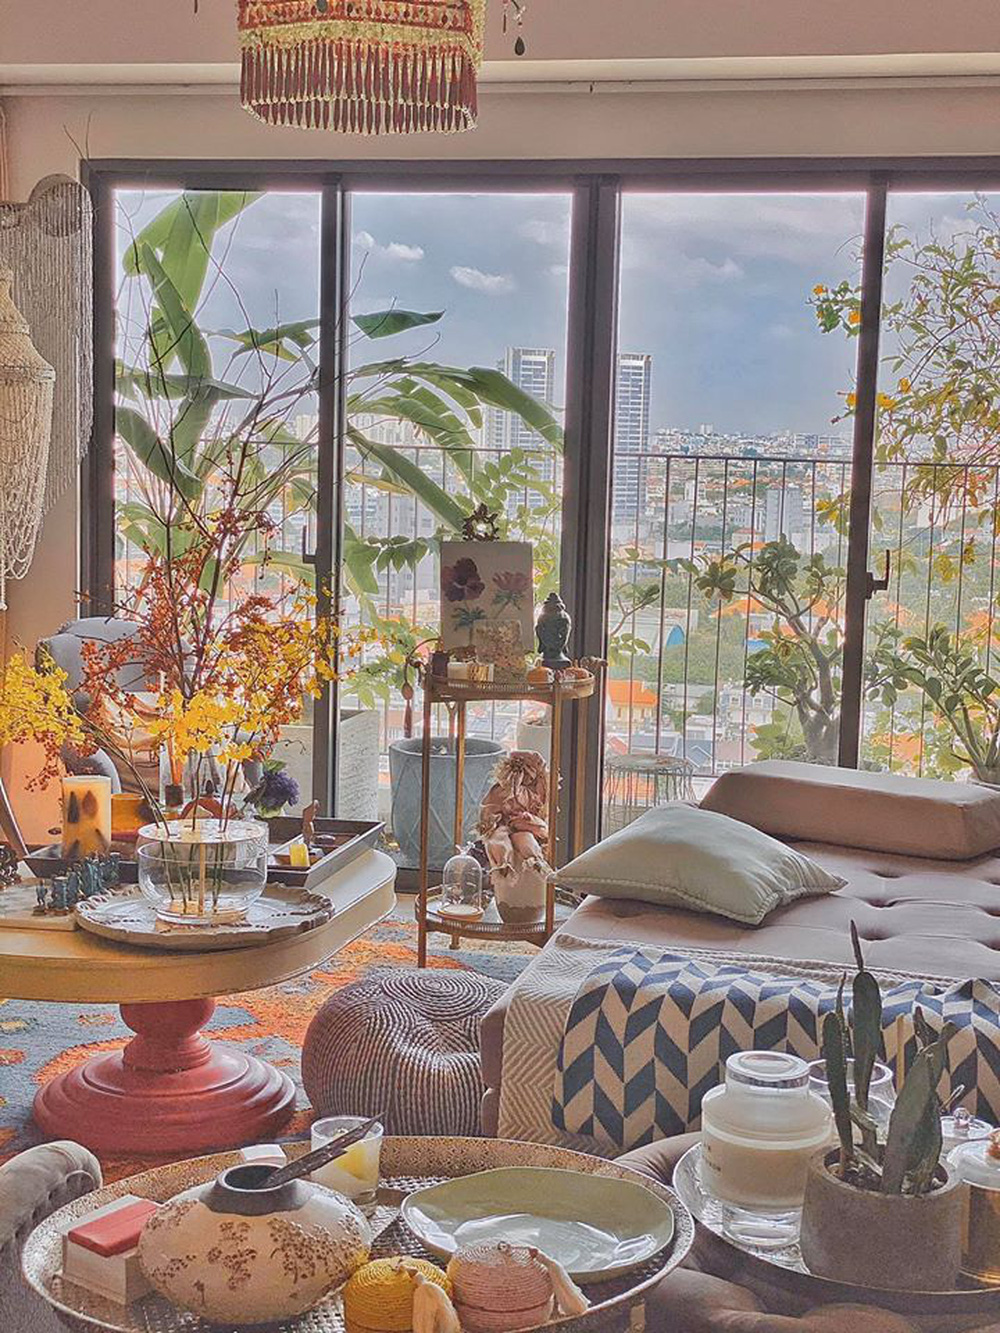 Căn penthouse triệu đô của NTK Lý Quí Khánh: Nội thất đậm chất vintage, đẹp mỹ mãn như một bức tranh - Ảnh 8.